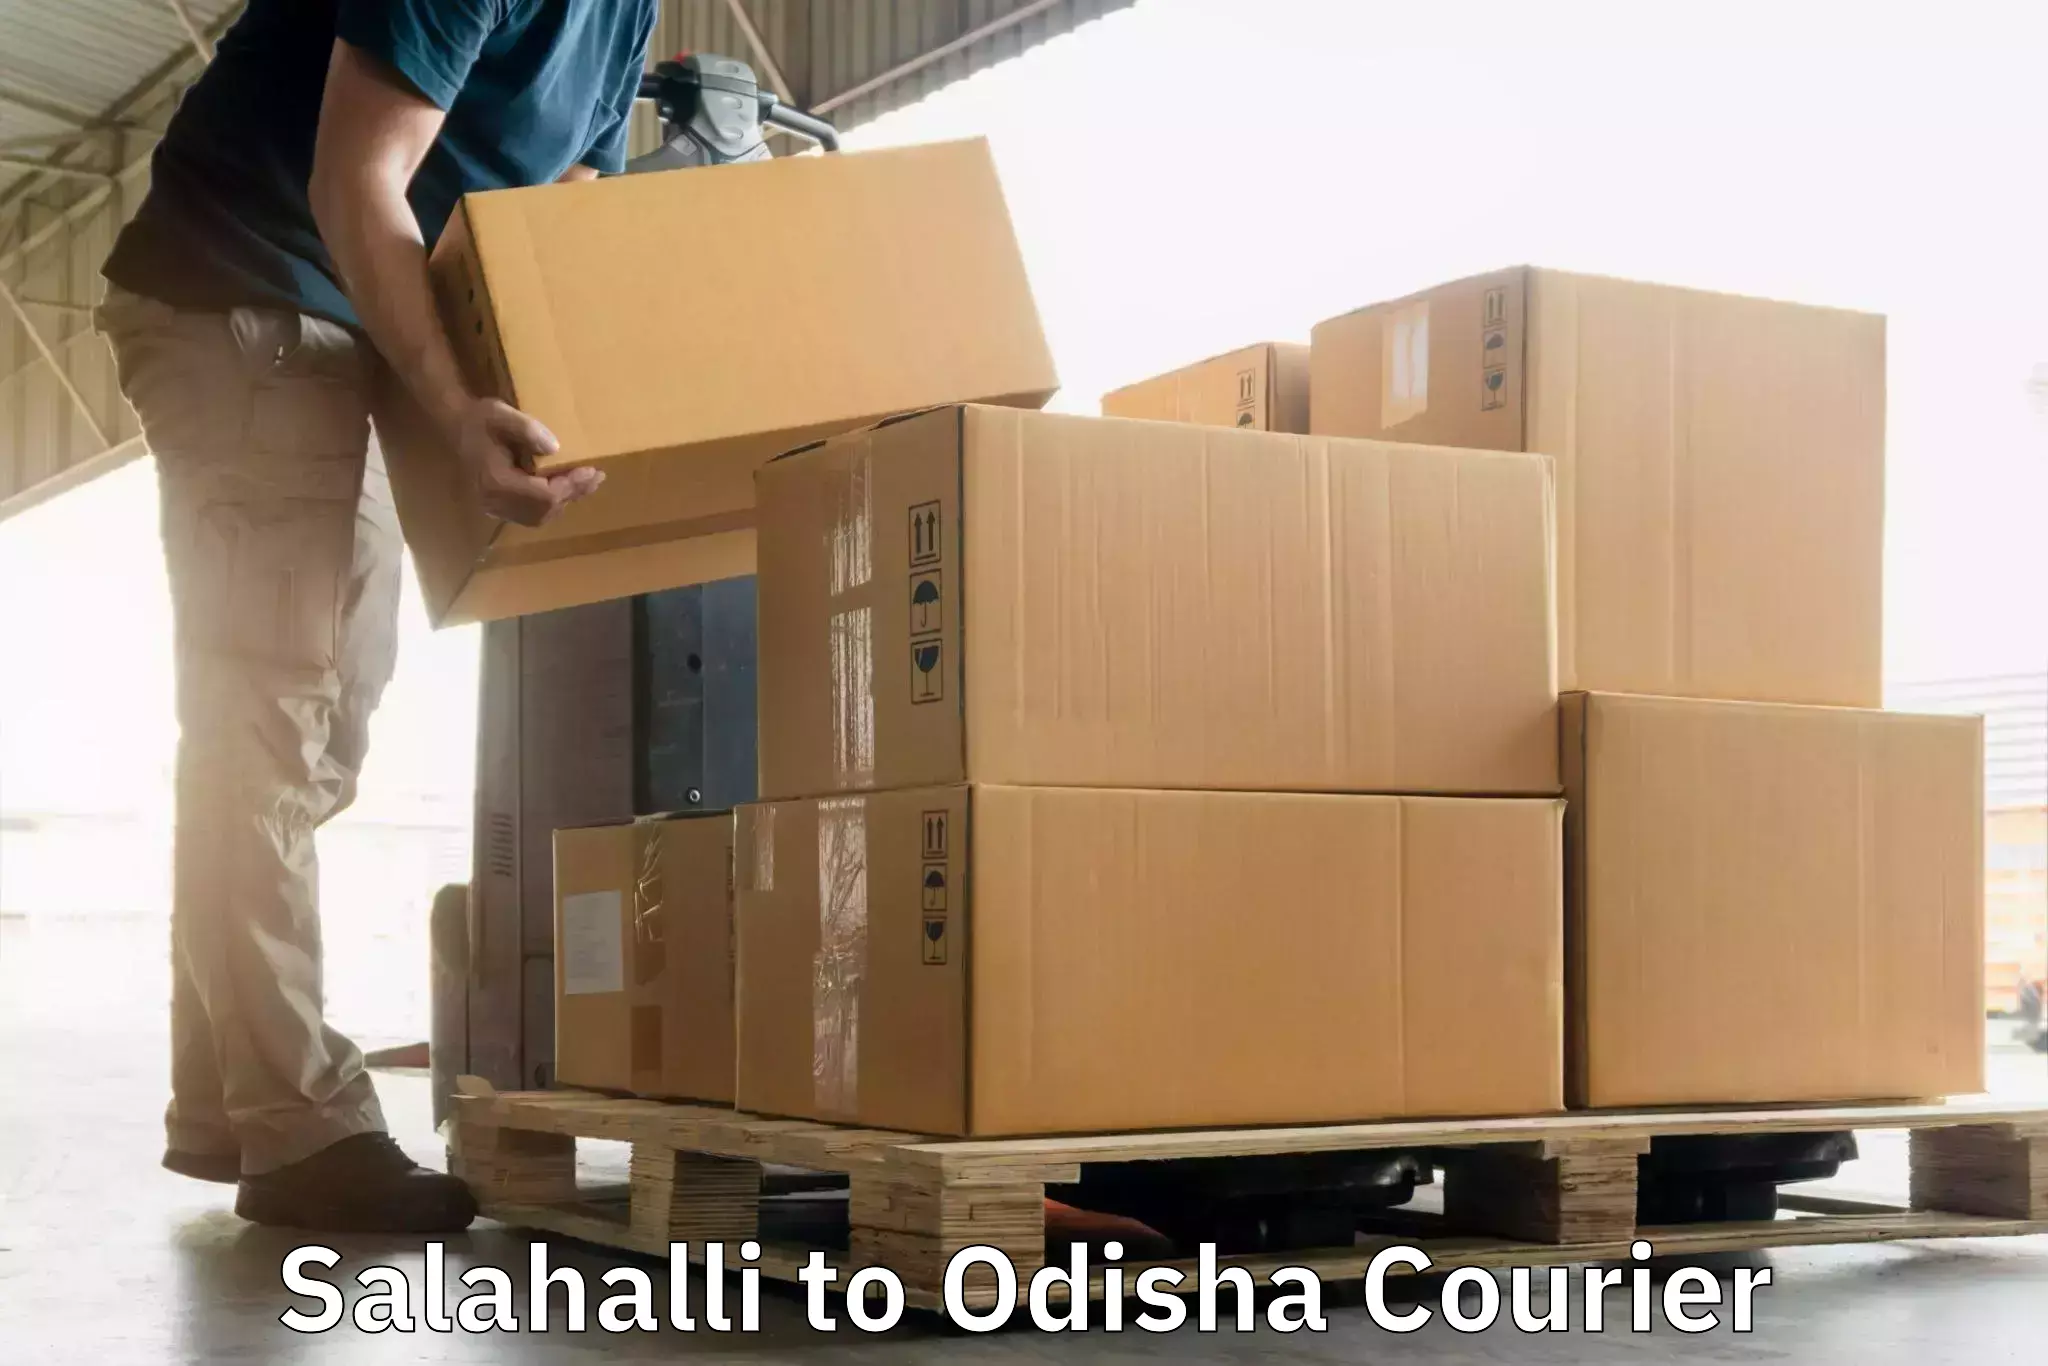 High-speed logistics services Salahalli to Mahakalapada